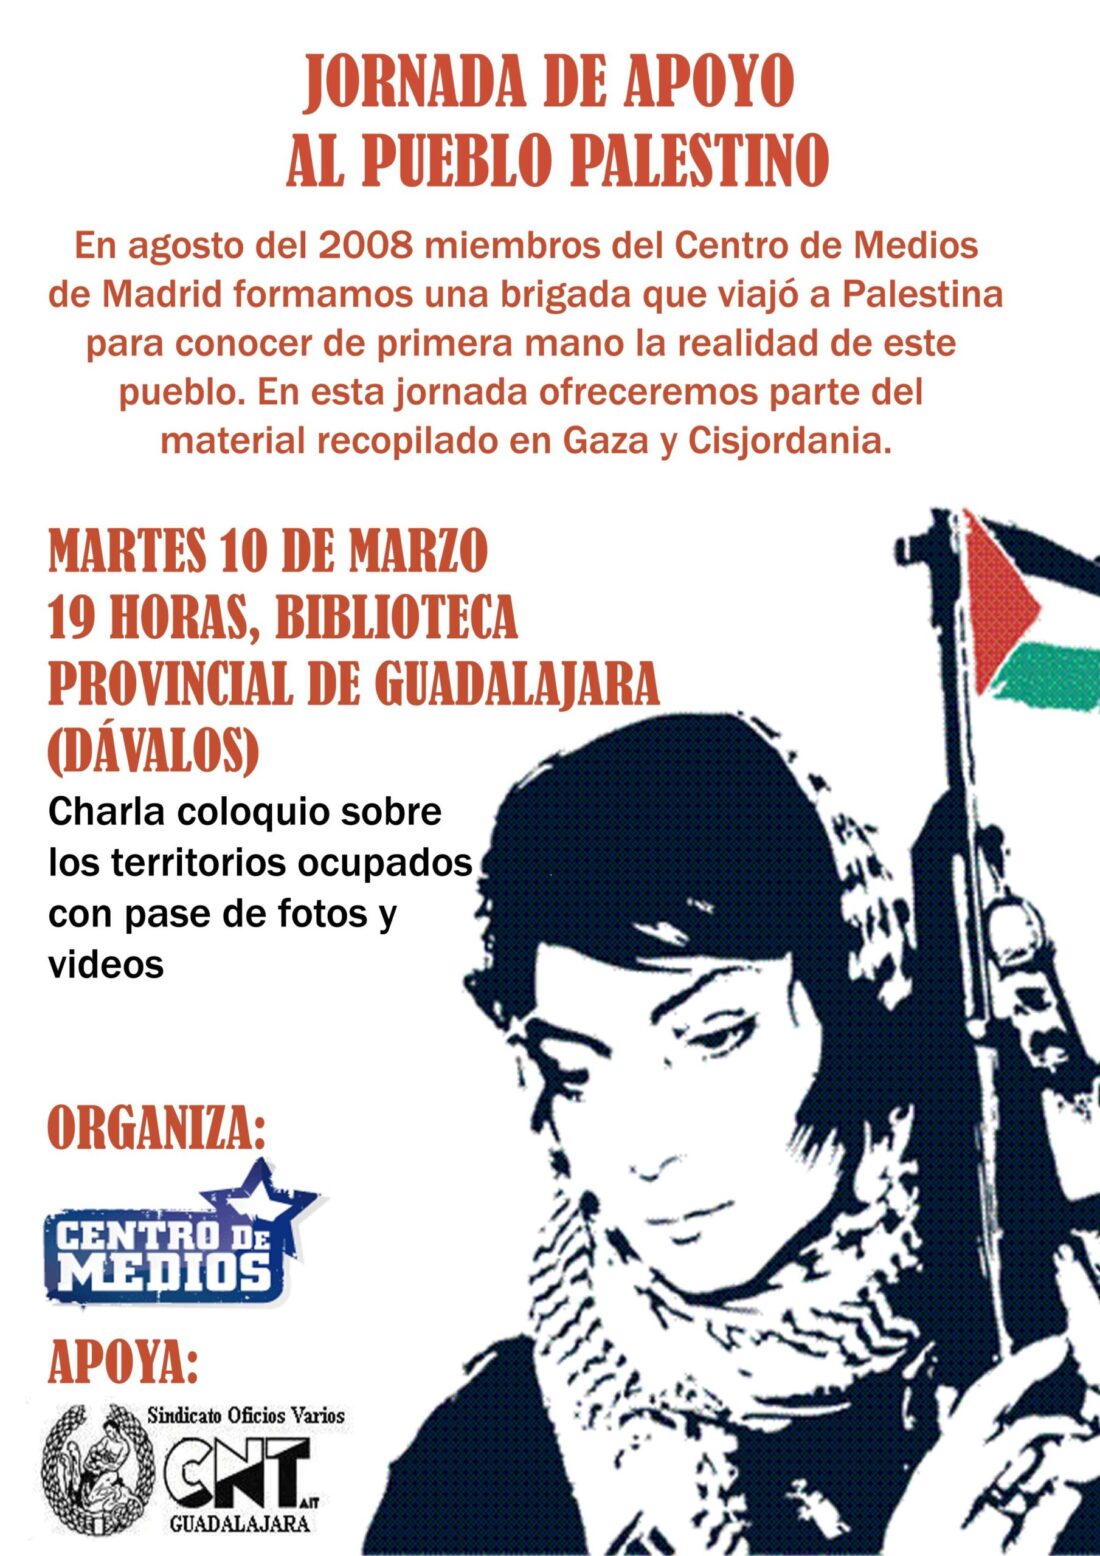 Guadalajara : Video-exposicion Sobre la Situacion en Palestina por el CENTRO DE MEDIOS